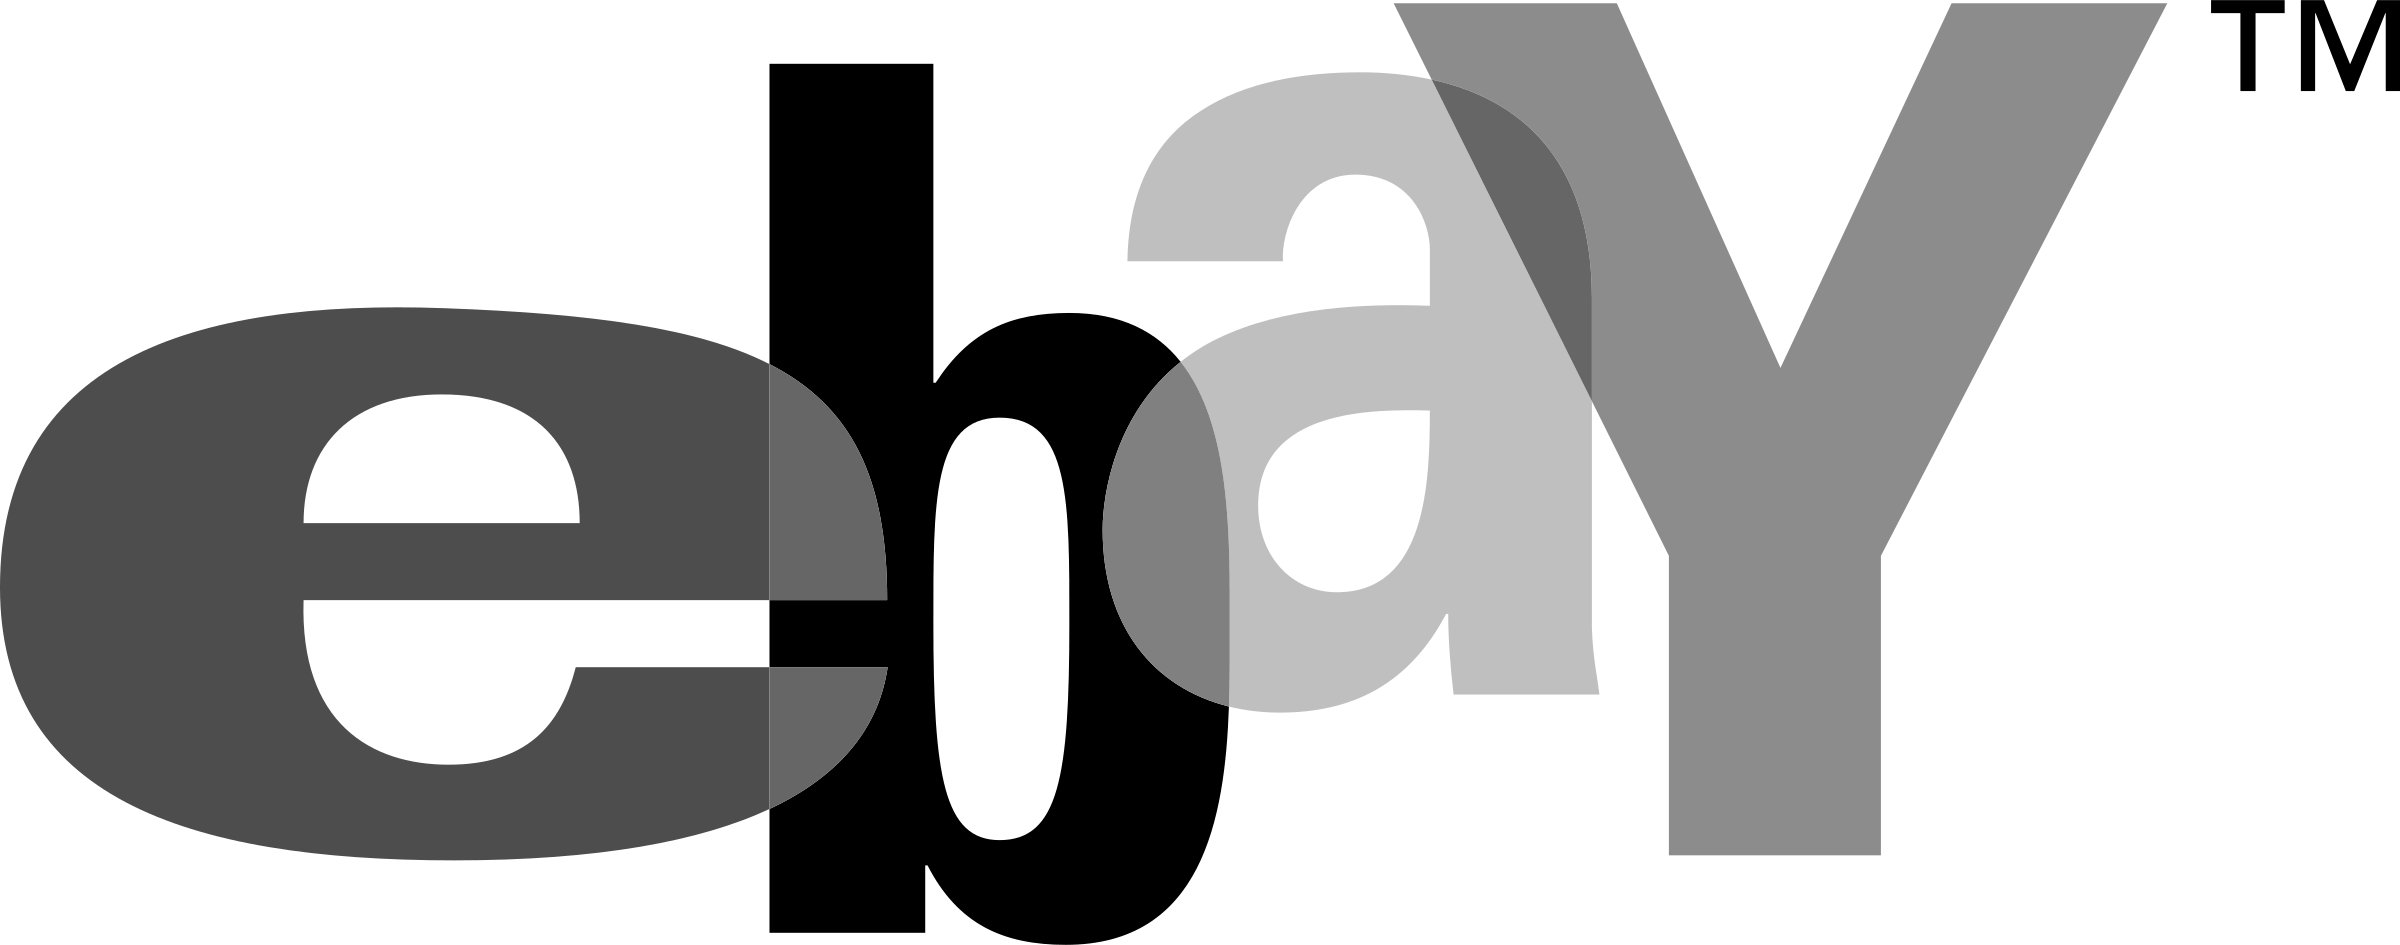 eBay Black Logo - Ebay Logo PNG Transparent & SVG Vector